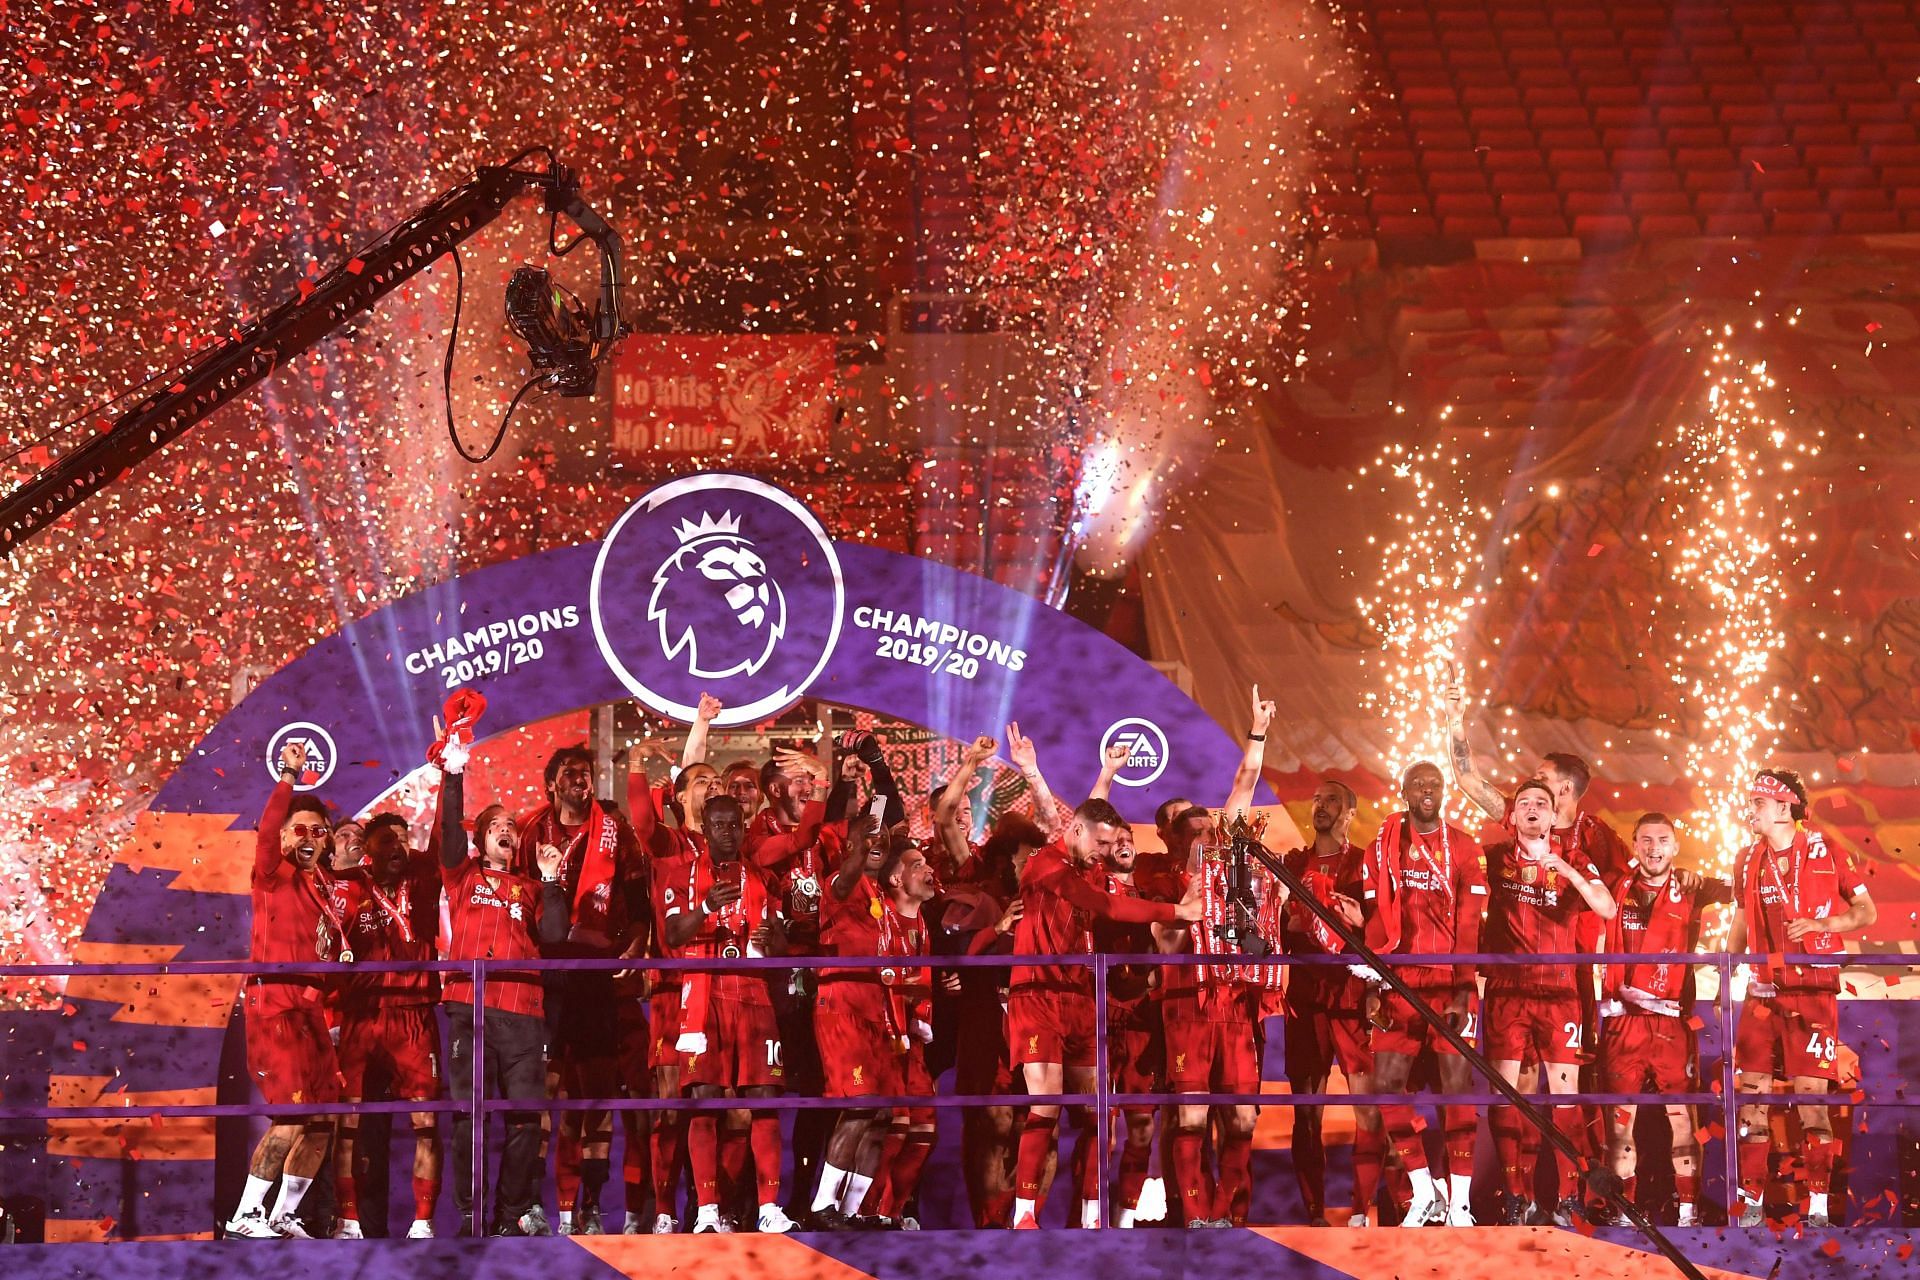 रेड्स ने 2019-20 प्रीमियर लीग का खिताब जीता